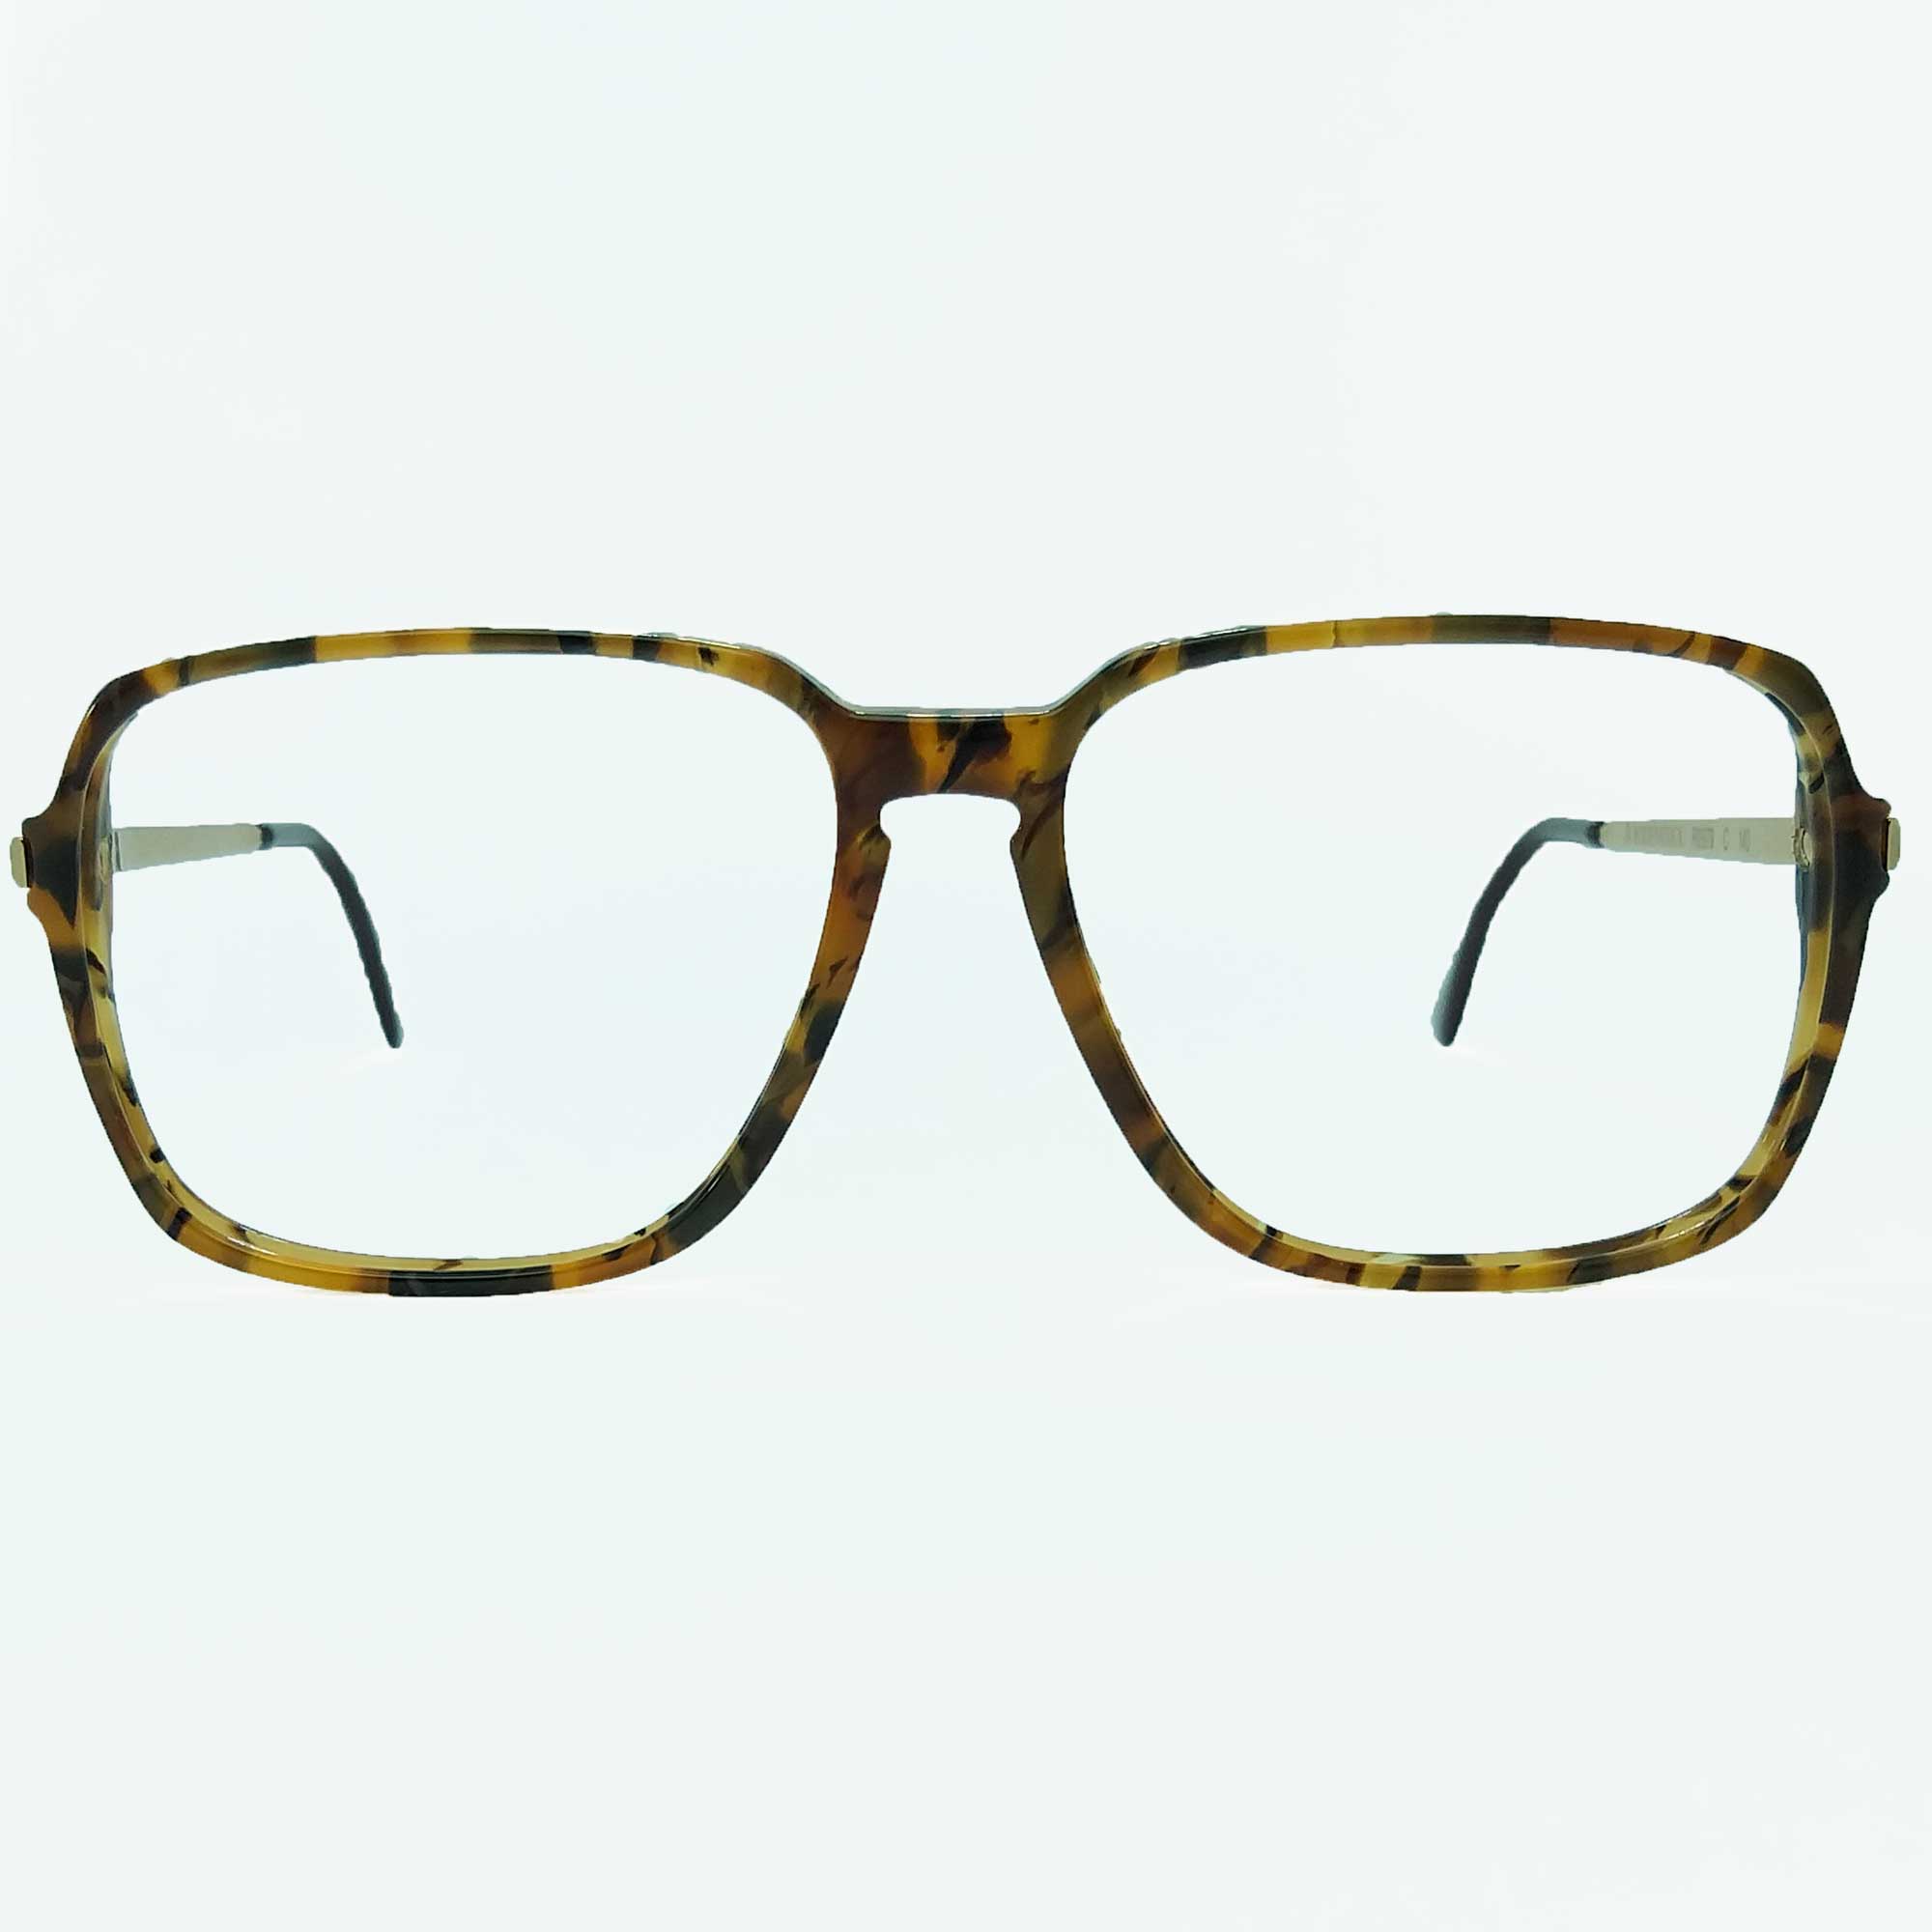 فریم عینک طبی رودن اشتوک مدل R 979 C -  - 3